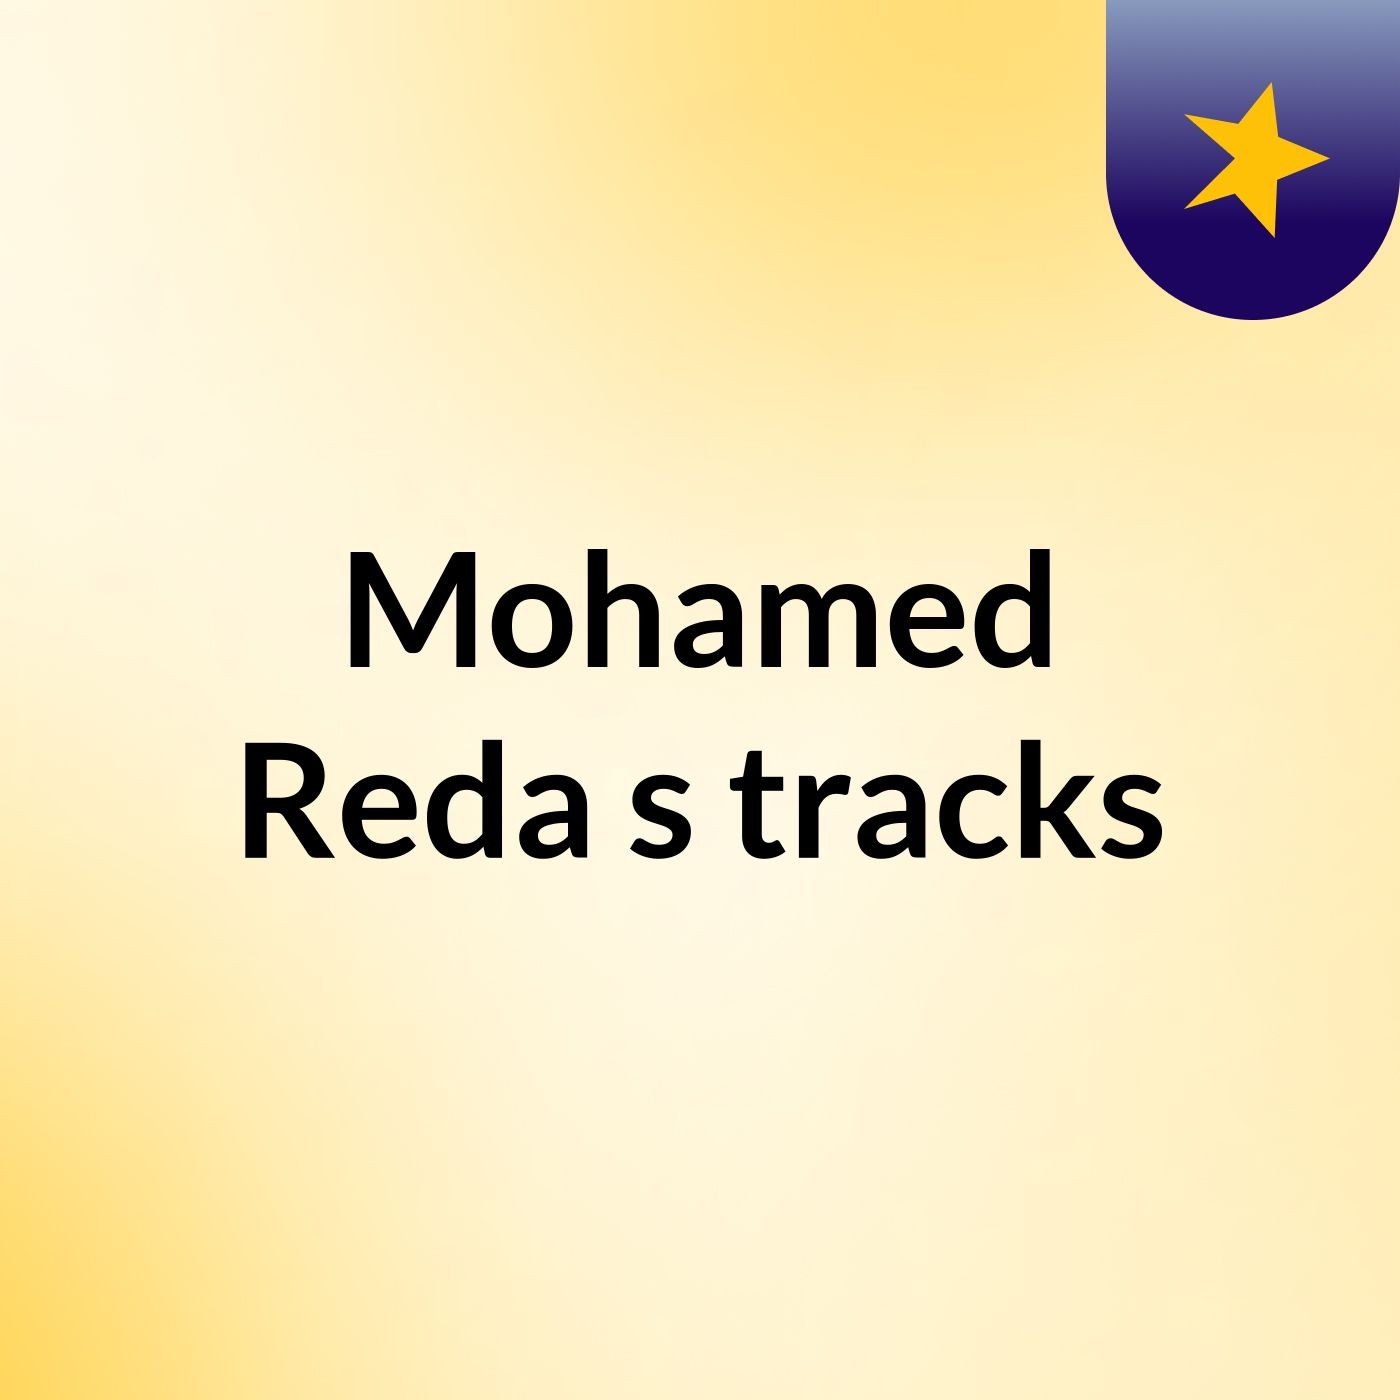 Mohamed Reda's tracks